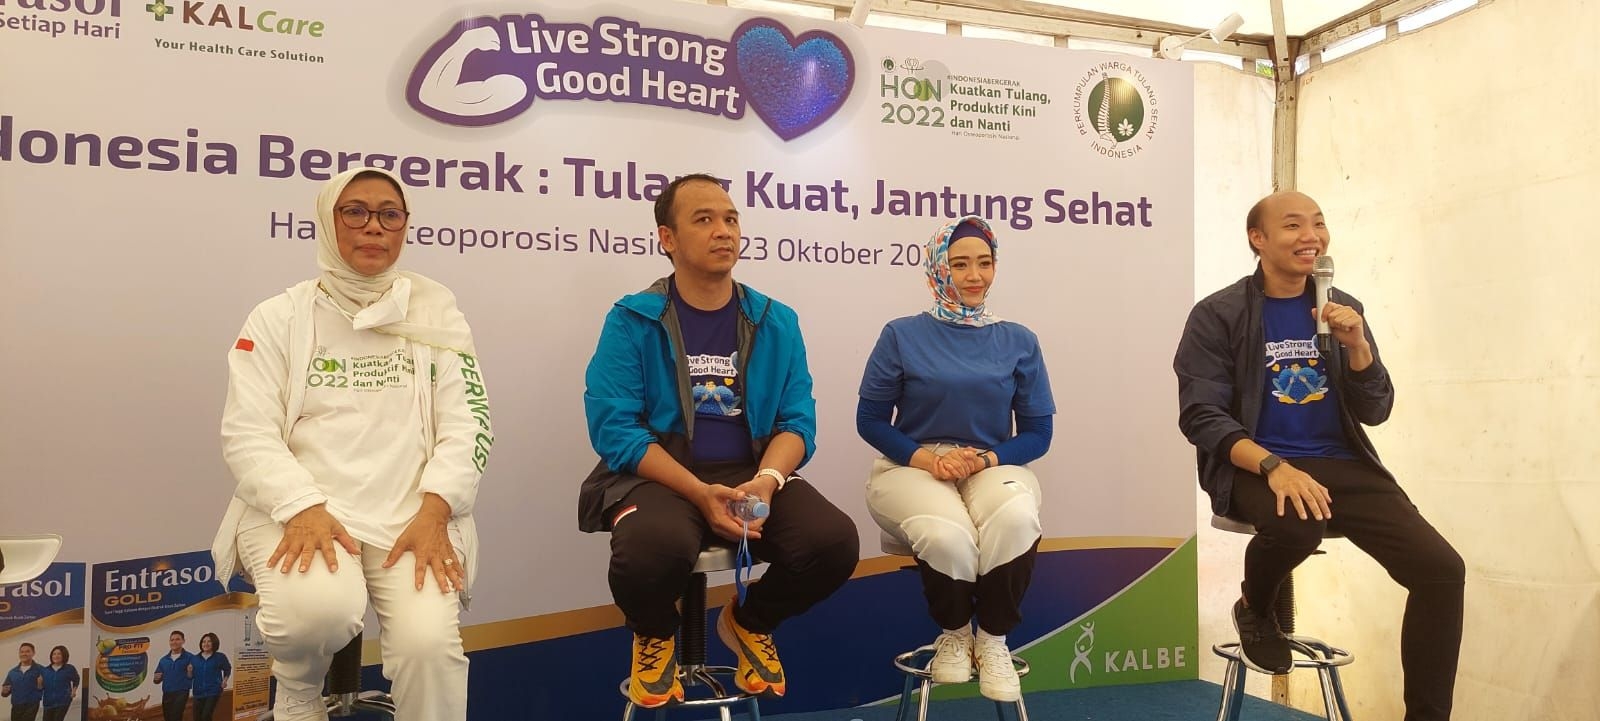 ENTRASOL Gandeng PERWATUSI Ajak Indonesia Bergerak Agar Tulang Kuat & Jantung Sehat